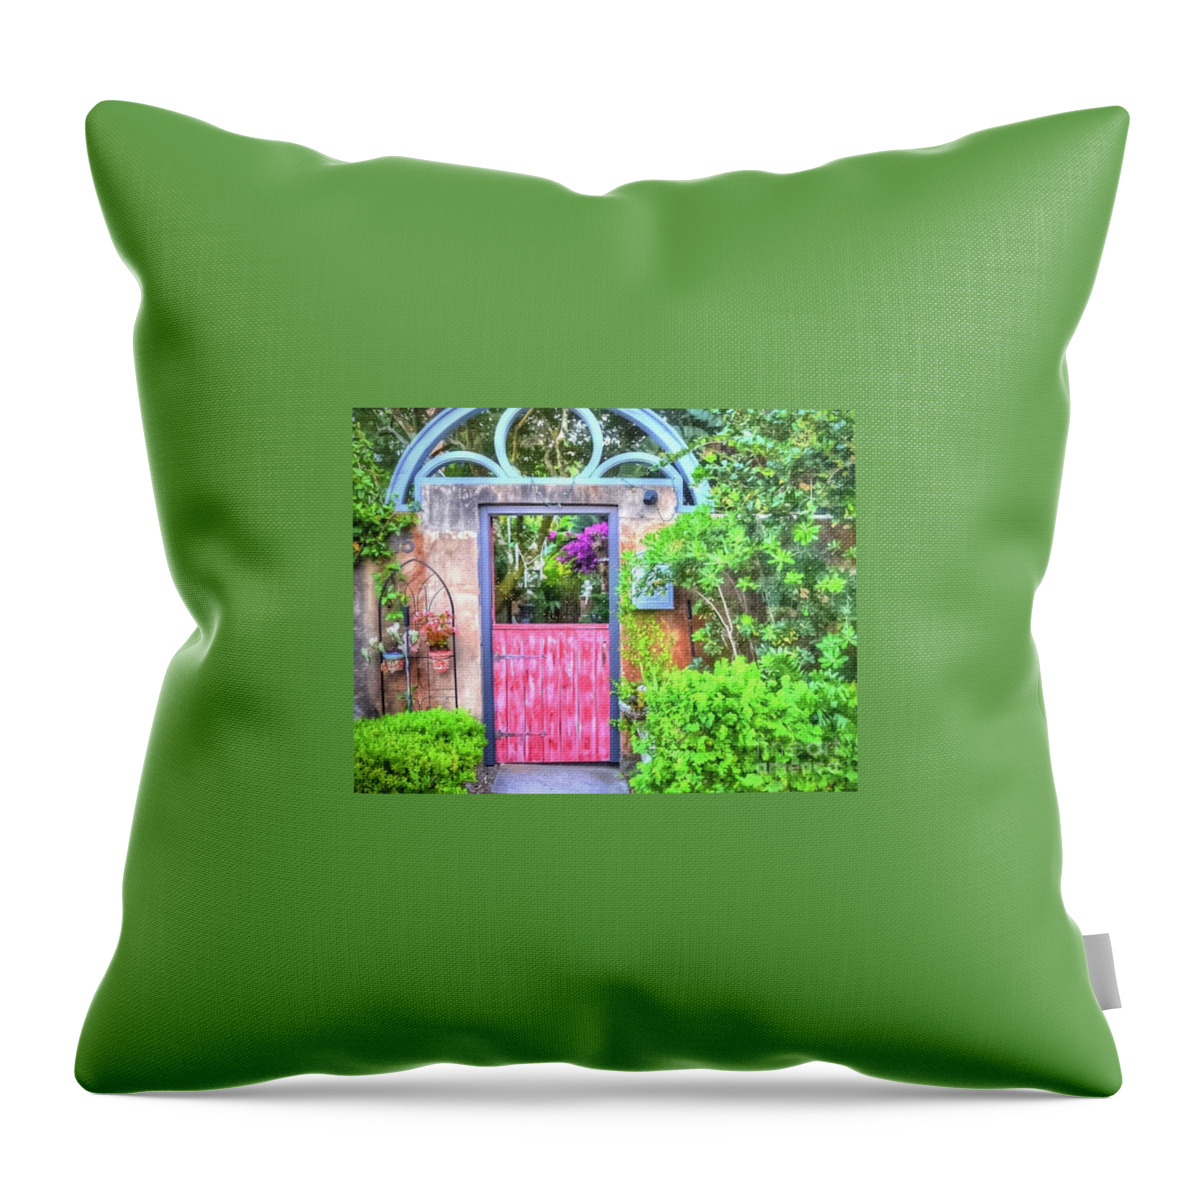 Garden Throw Pillow featuring the photograph Magic Garden by Debbi Granruth